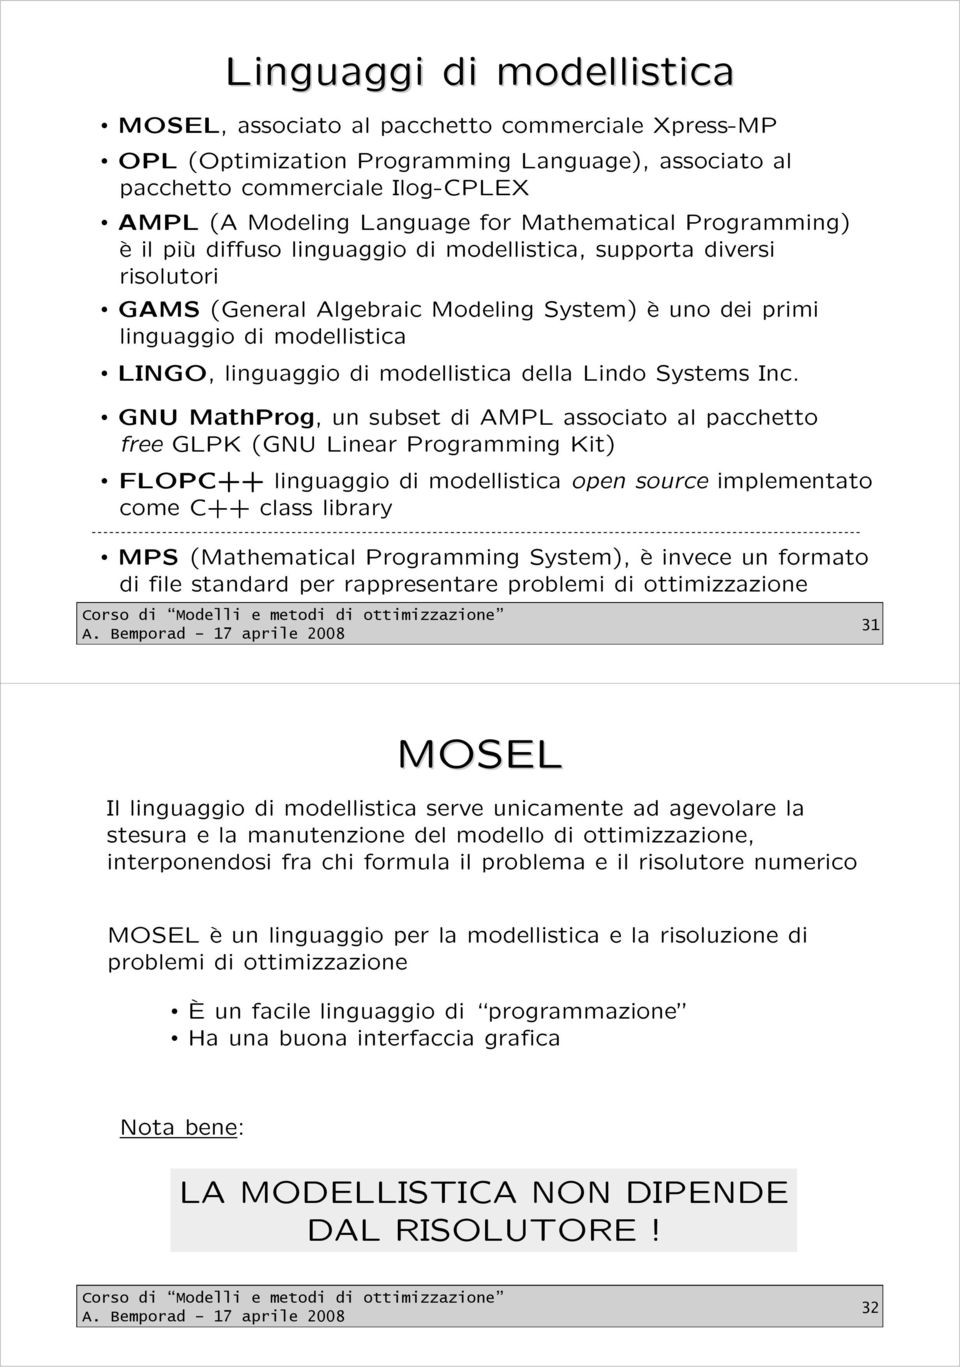 linguaggio di modellistica della Lindo Systems Inc.